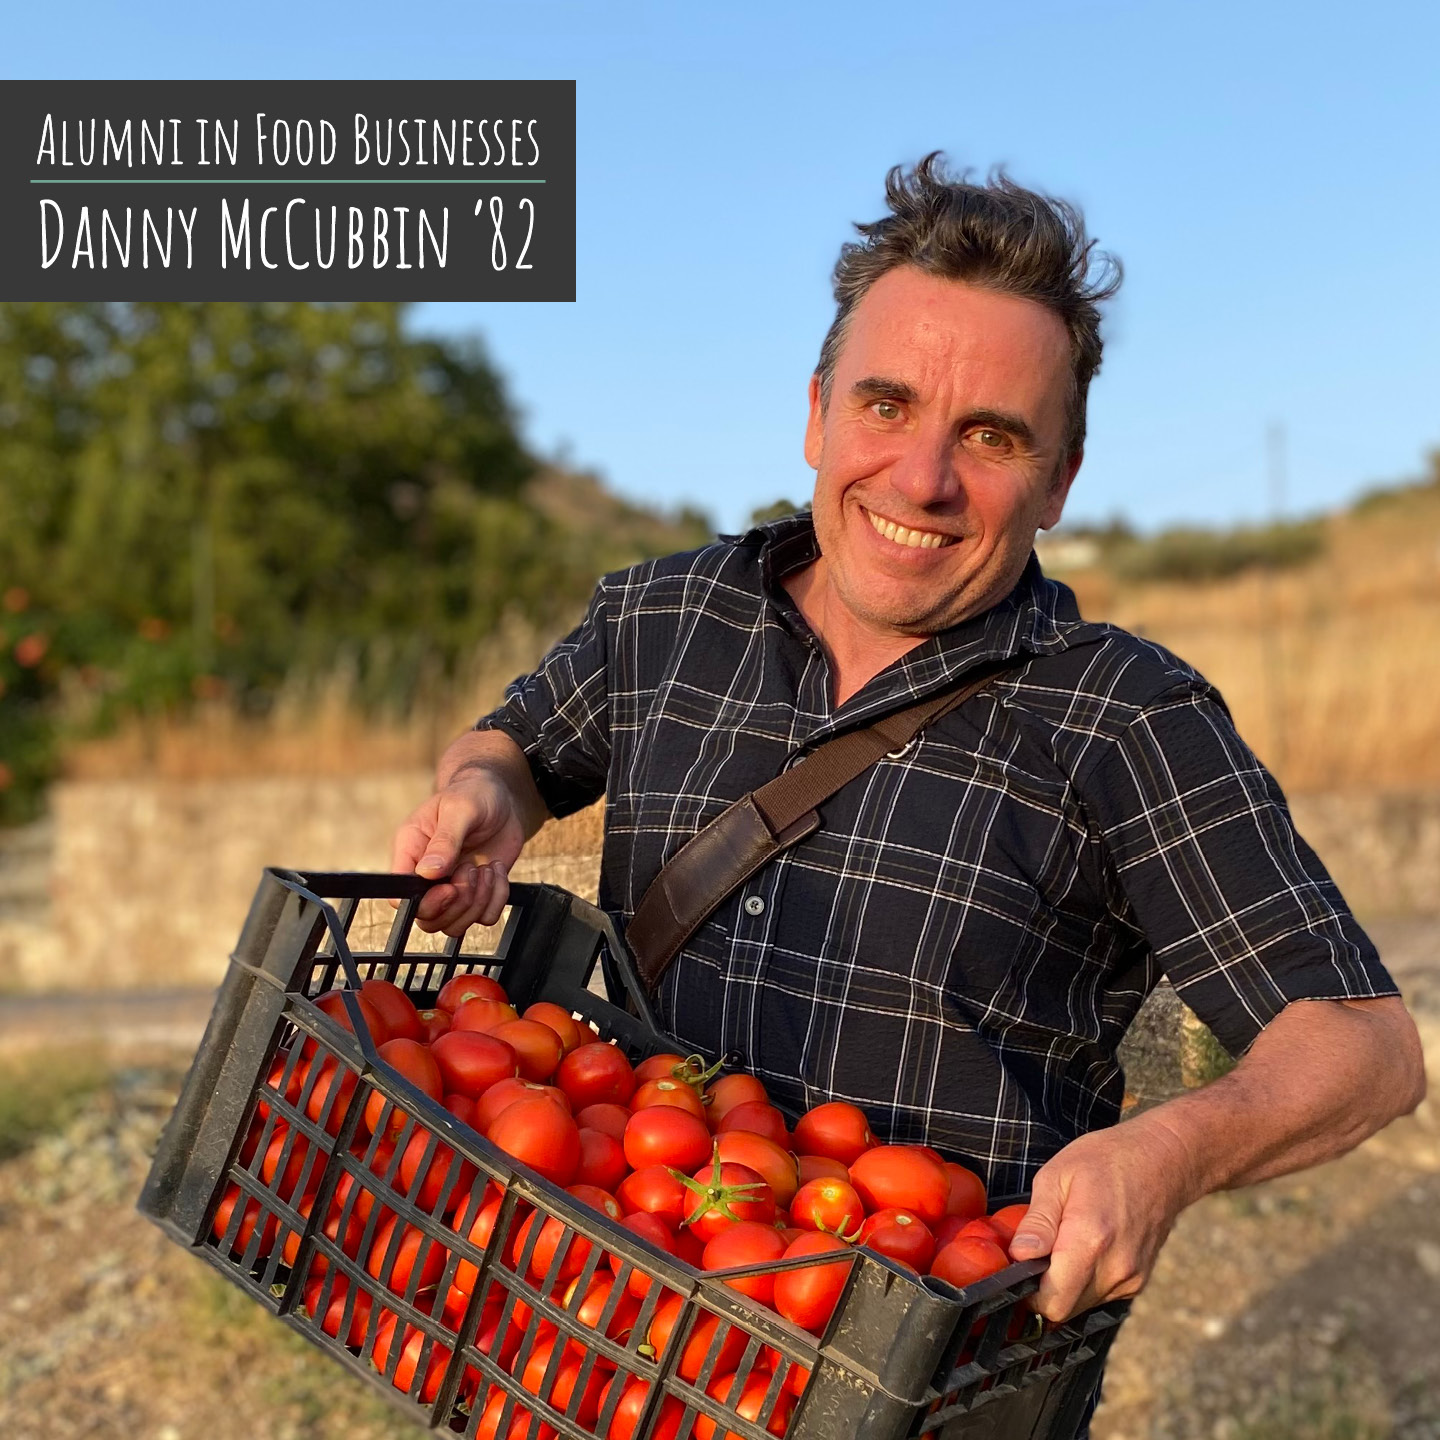 Alumni In Food Businesses: Danny McCubbin '82